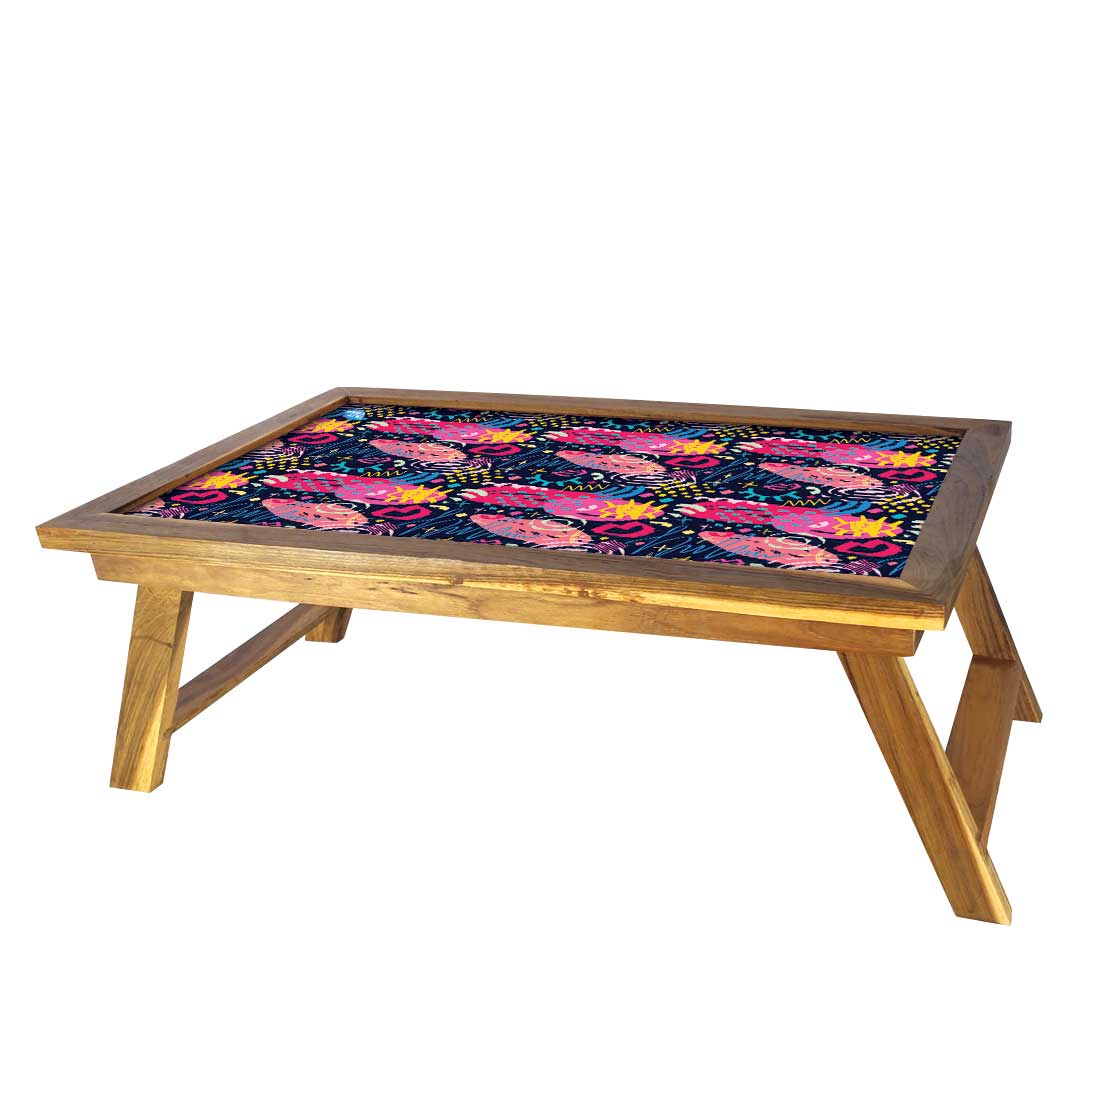 Designer Folding Lap Tray for Bed Breakfast Table - Pattern Purple Nutcase